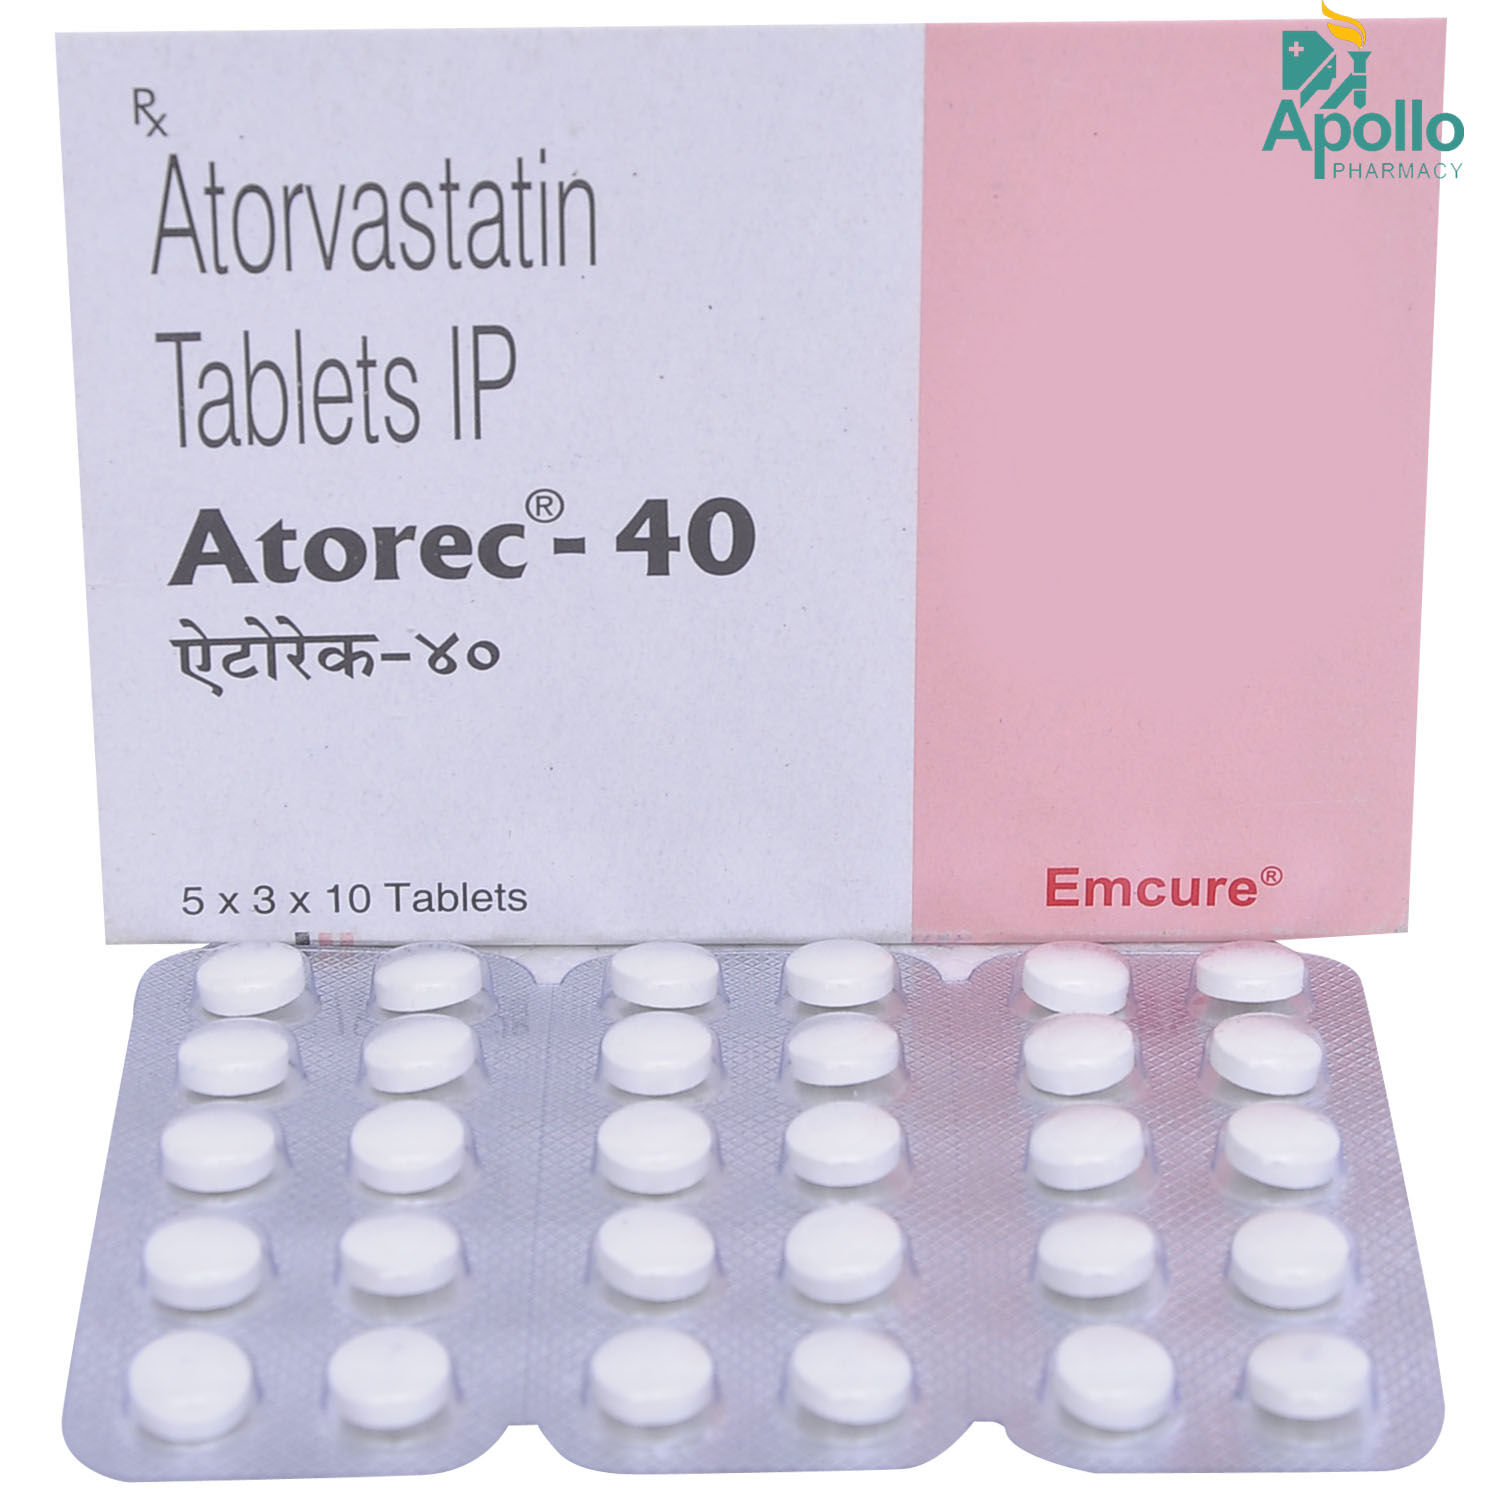 Atorec 40 Tablet 10's, Pack of 10 TABLETS